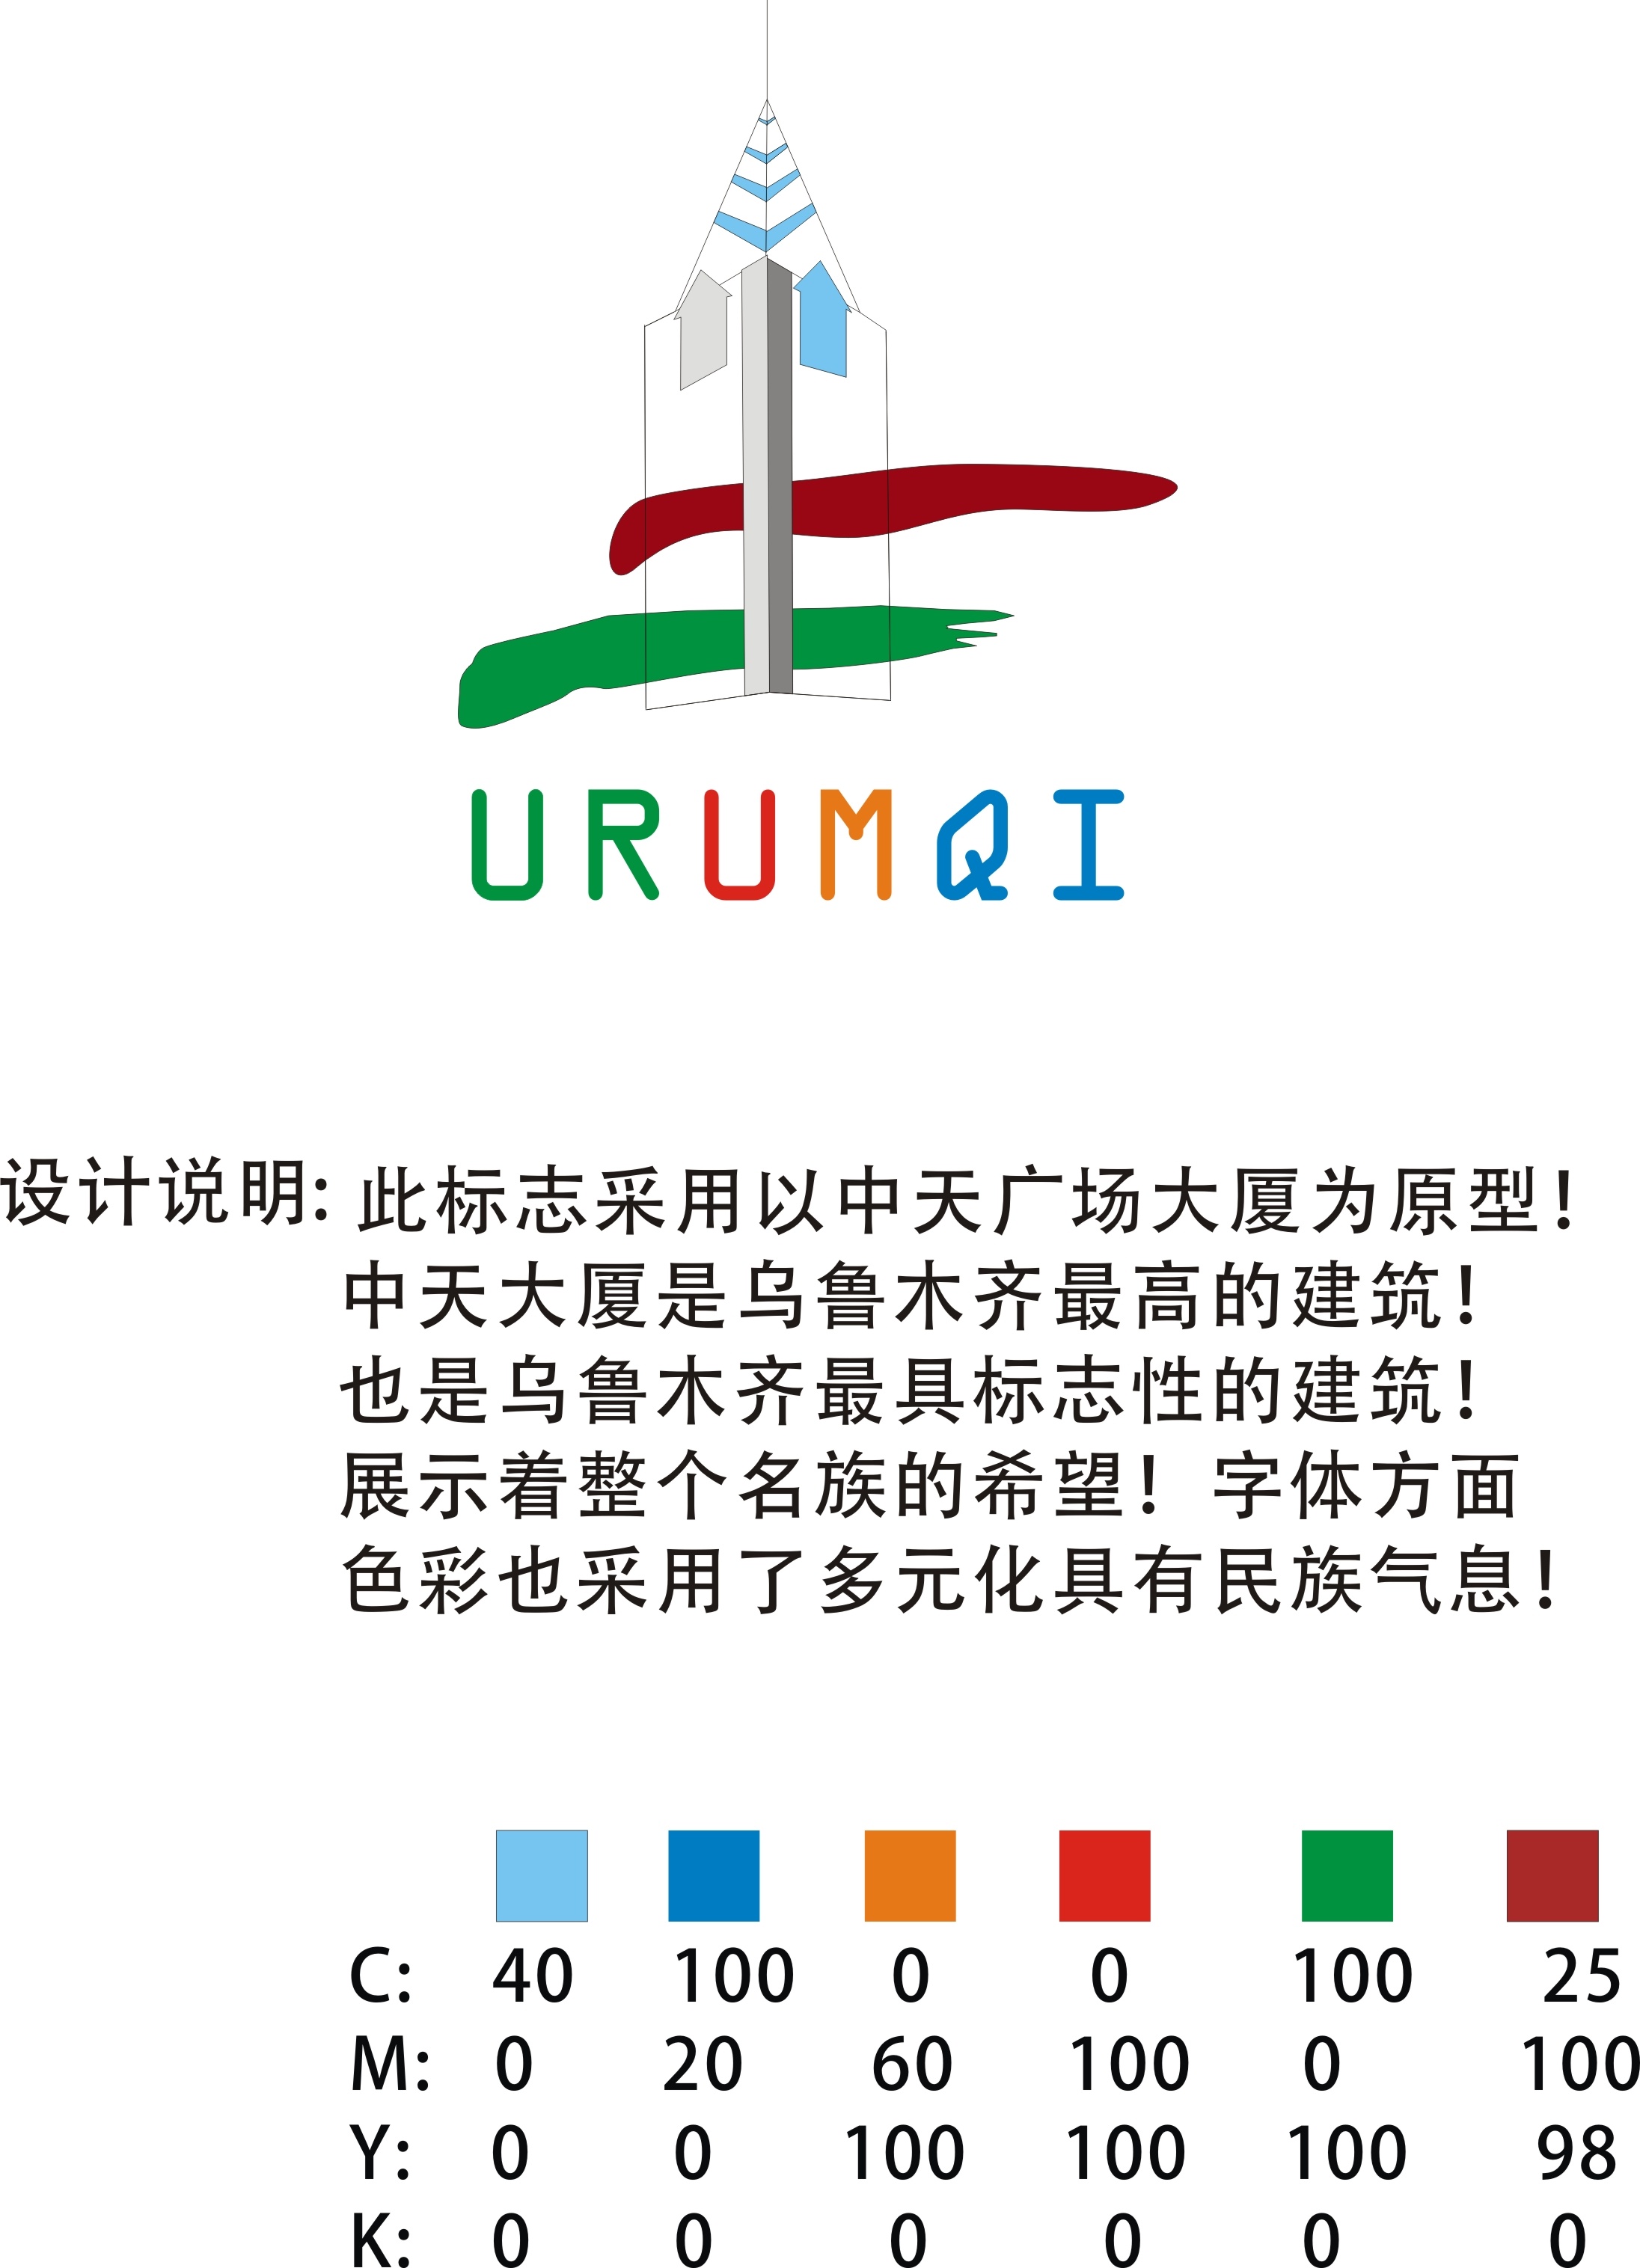 乌鲁木齐旅游形象logo,宣传标语征集活动